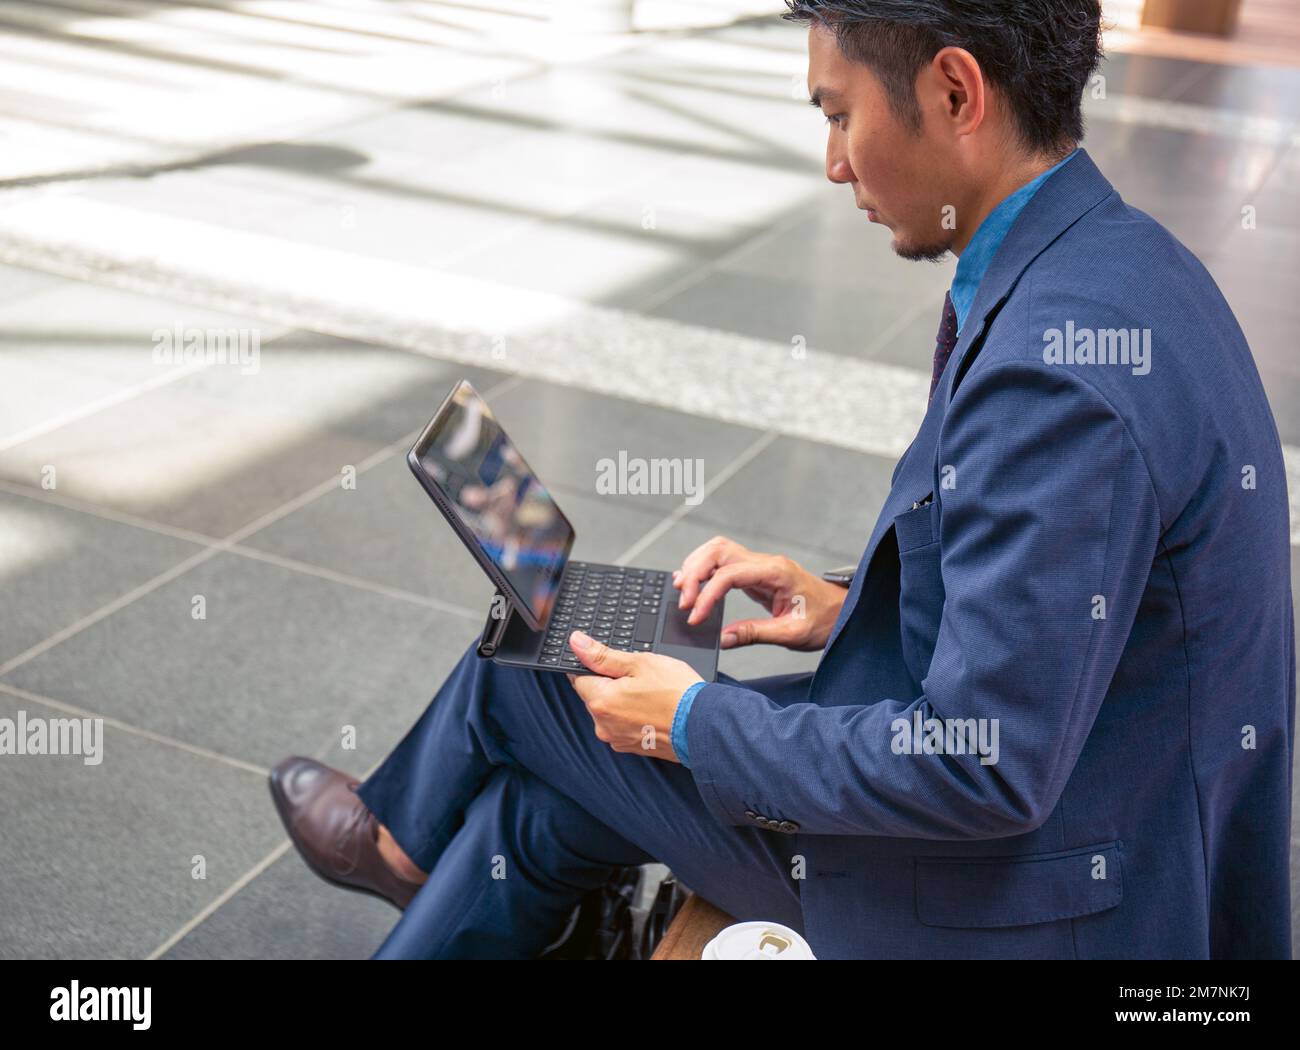 Ein junger Geschäftsmann in einem blauen Anzug, der unterwegs ist, in einer Innenstadt, sitzt auf einer Bank und benutzt ein digitales Tablet mit Bildschirm. Stockfoto